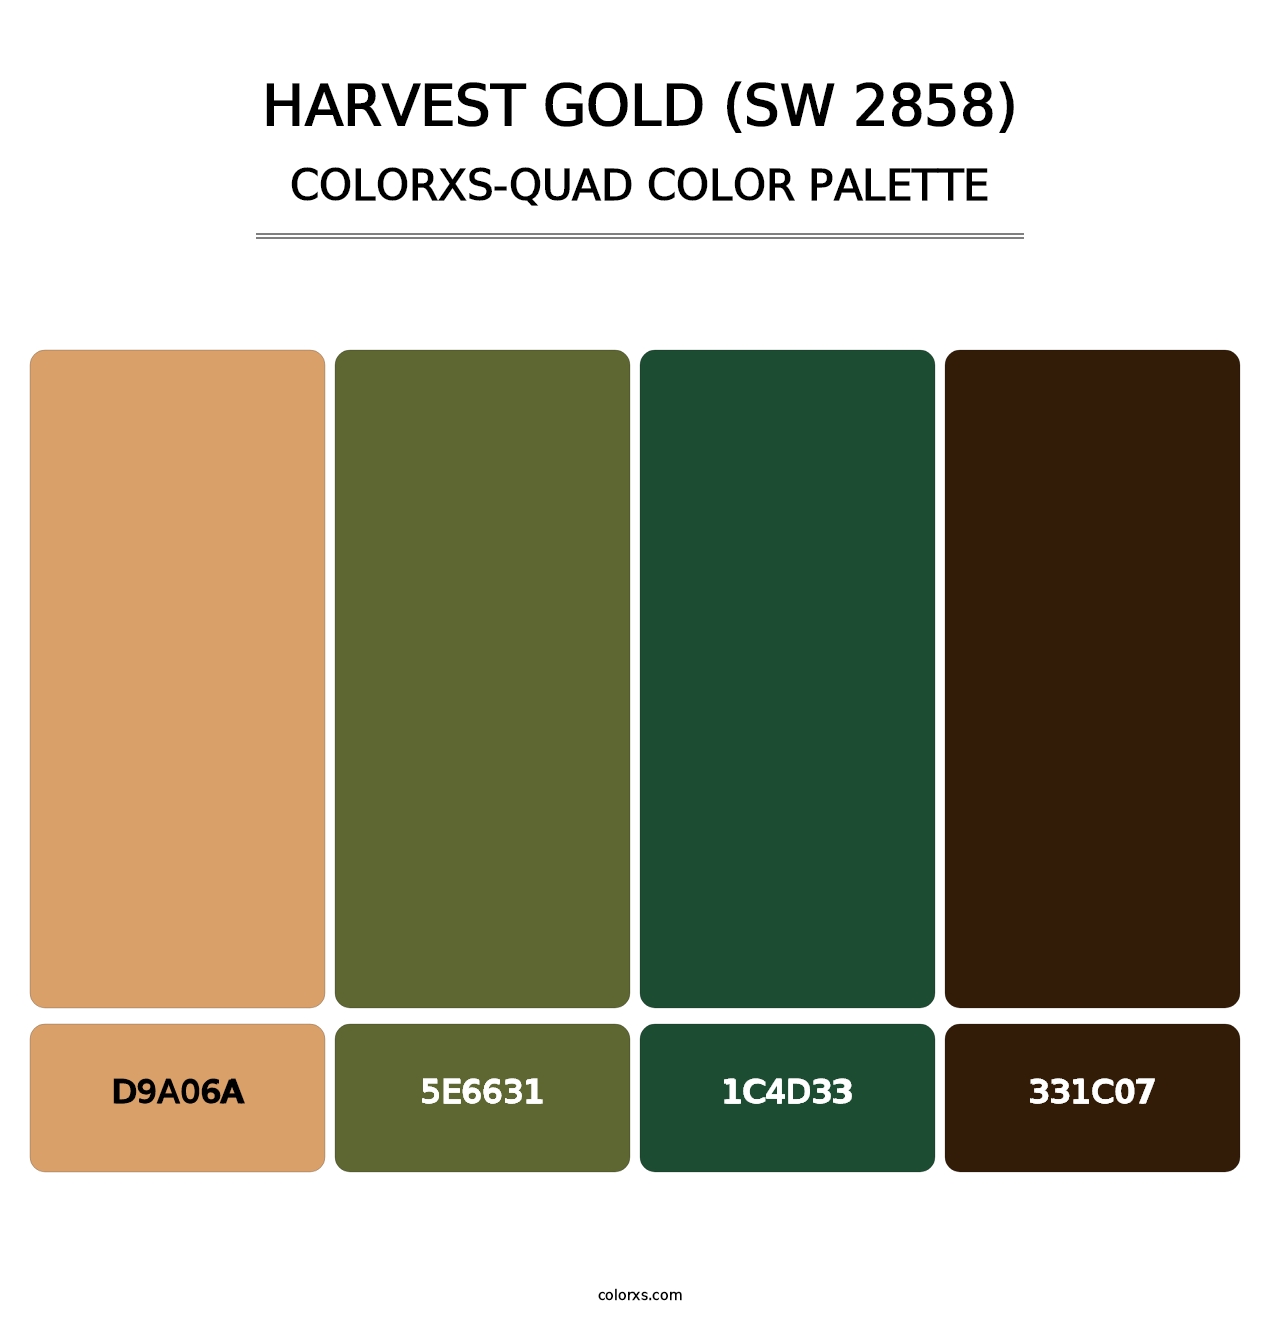 Harvest Gold (SW 2858) - Colorxs Quad Palette